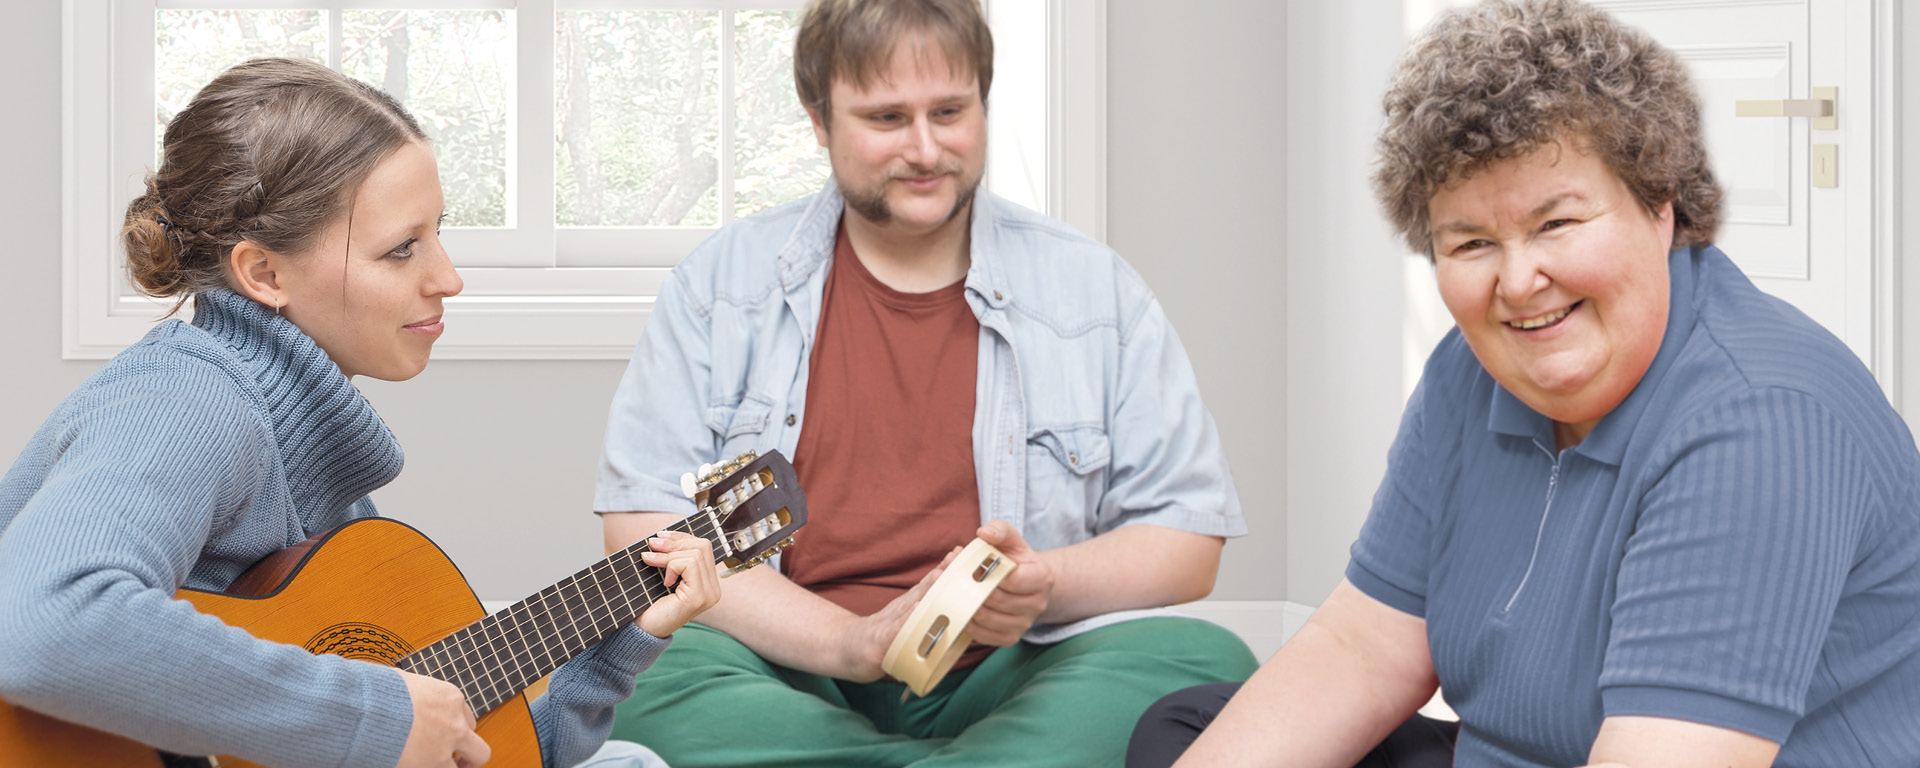 Eine junge Frau mit Gitarre begleitet eine Frau und einen Mann musikalisch